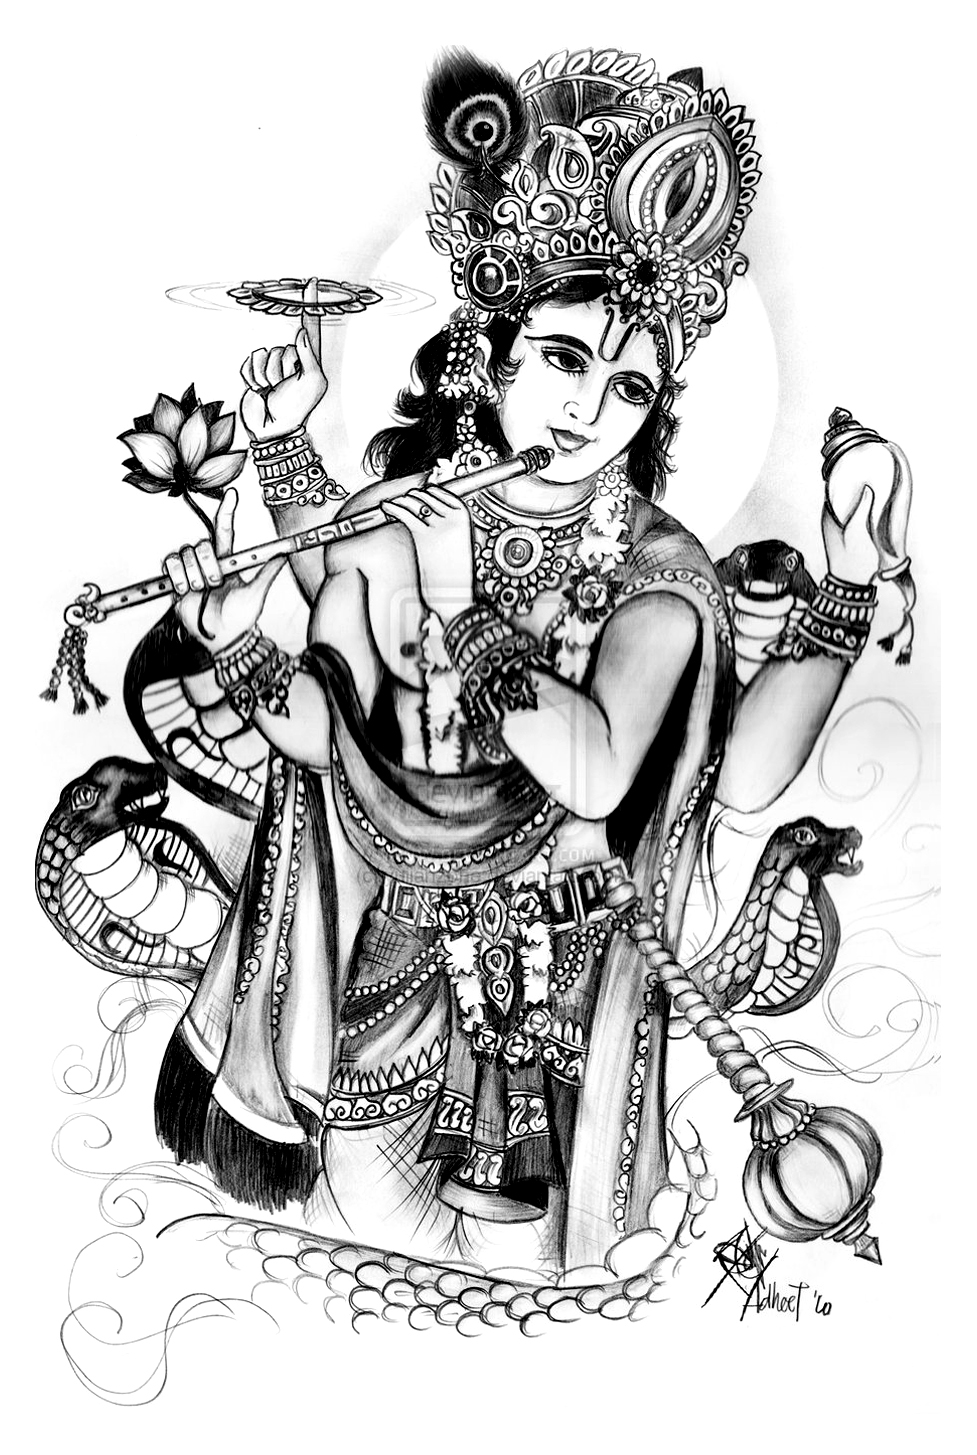 Dessin gratuit à imprimer et colorier de Vishnu, avec serpent (Sesa), fleur de Lotus, et flûte